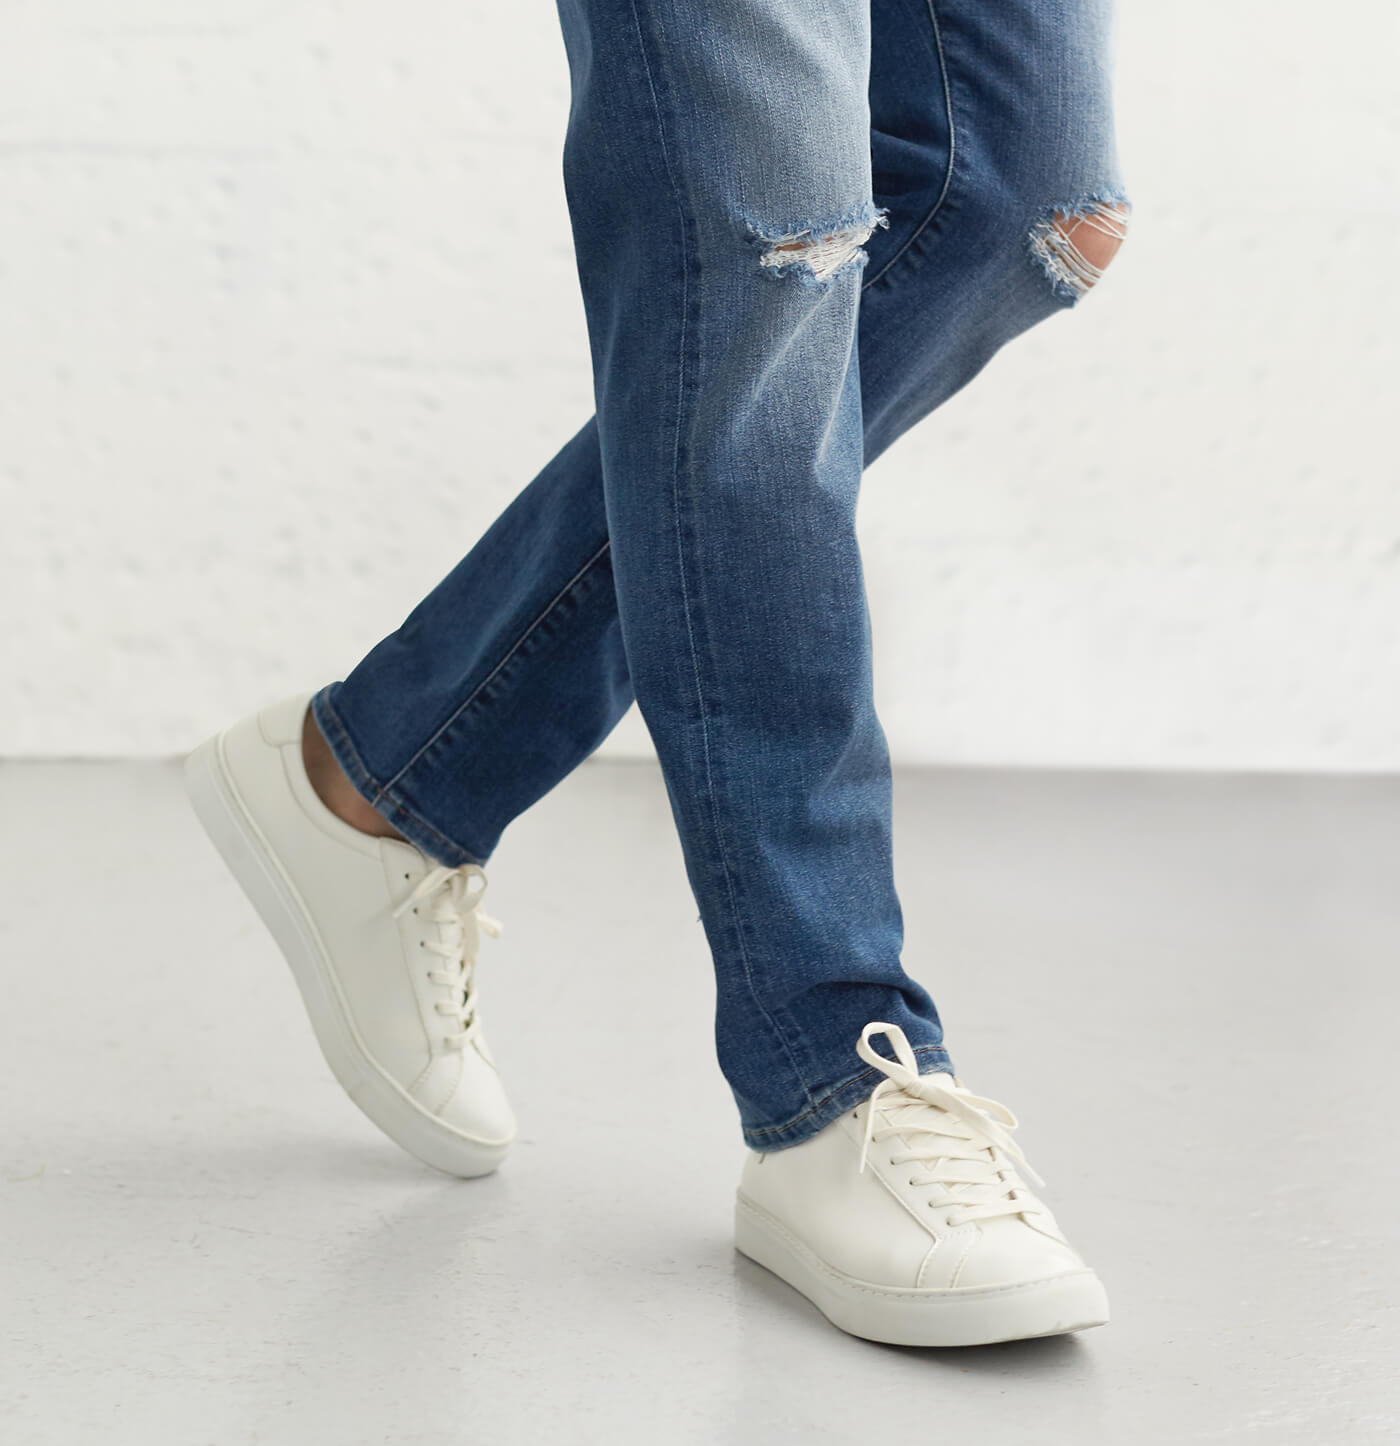 men's casual jean shoes